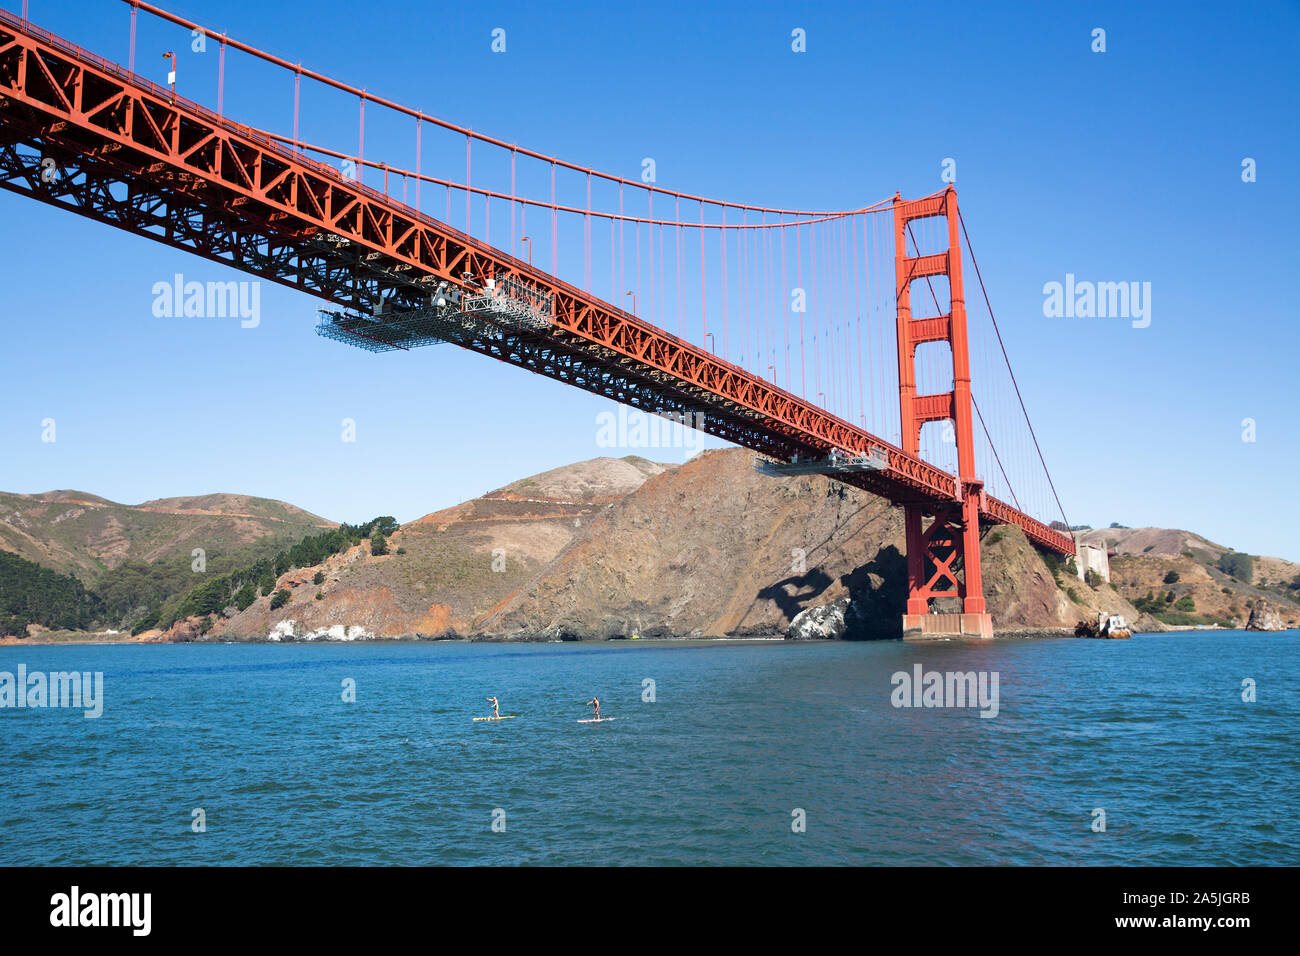 SAN FRANCISCO, Stati Uniti d'America - 8 Settembre 2019 : 2 persone su stand up paddle boards nella Baia di San Francisco sotto il Golden Gate Bridge. Foto Stock